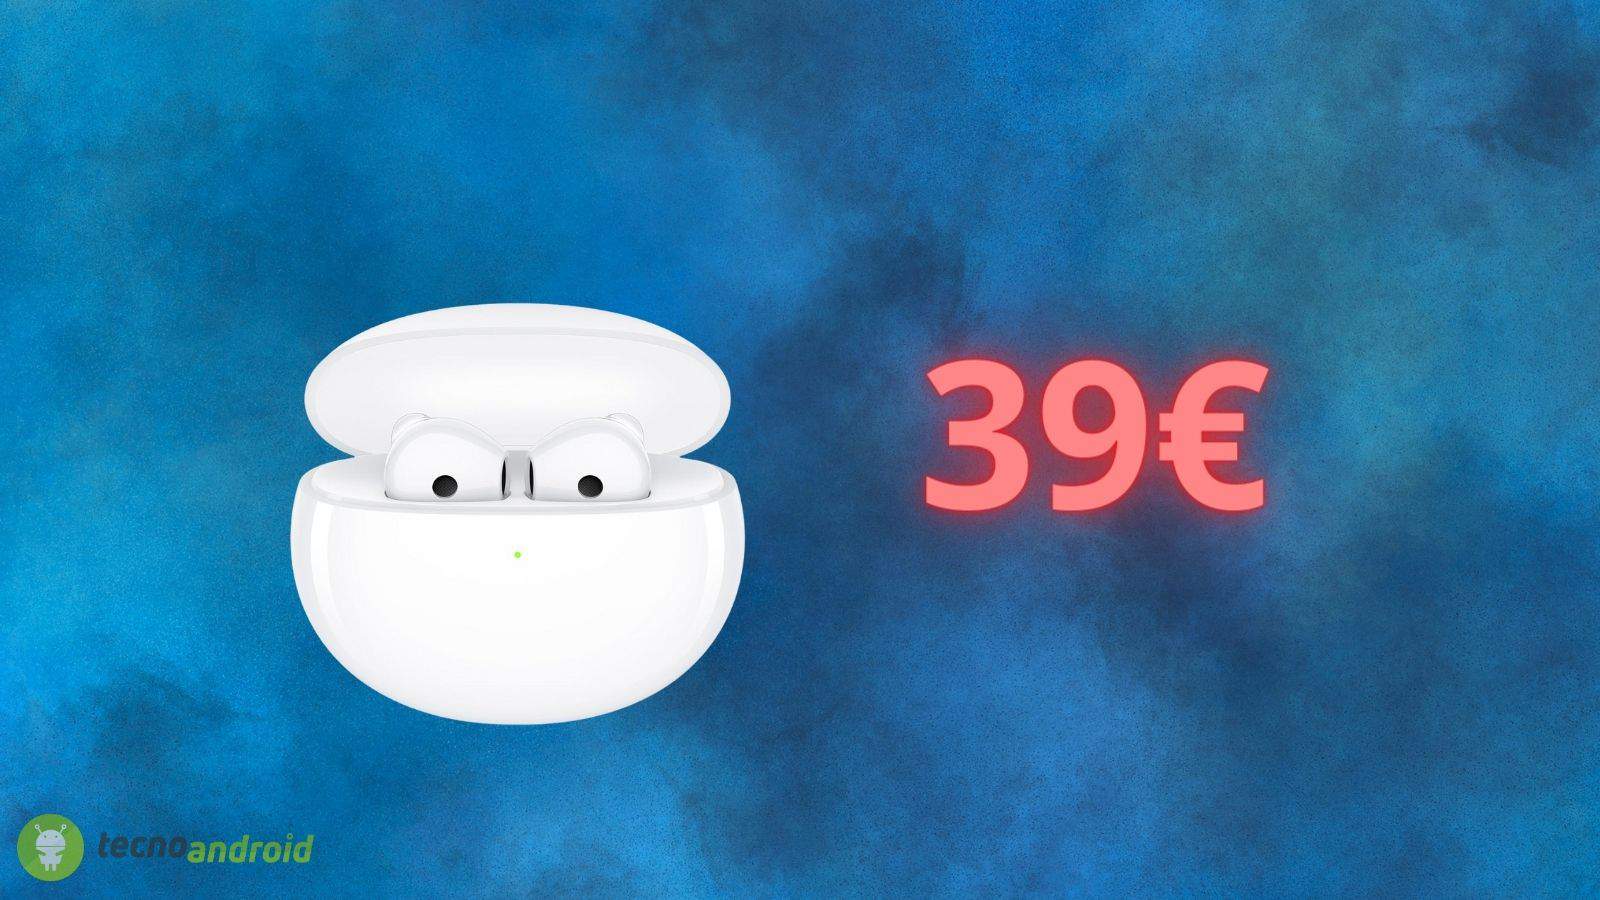 Auricolari true wireless OPPO a meno di 40 euro: Amazon è IMPAZZITA